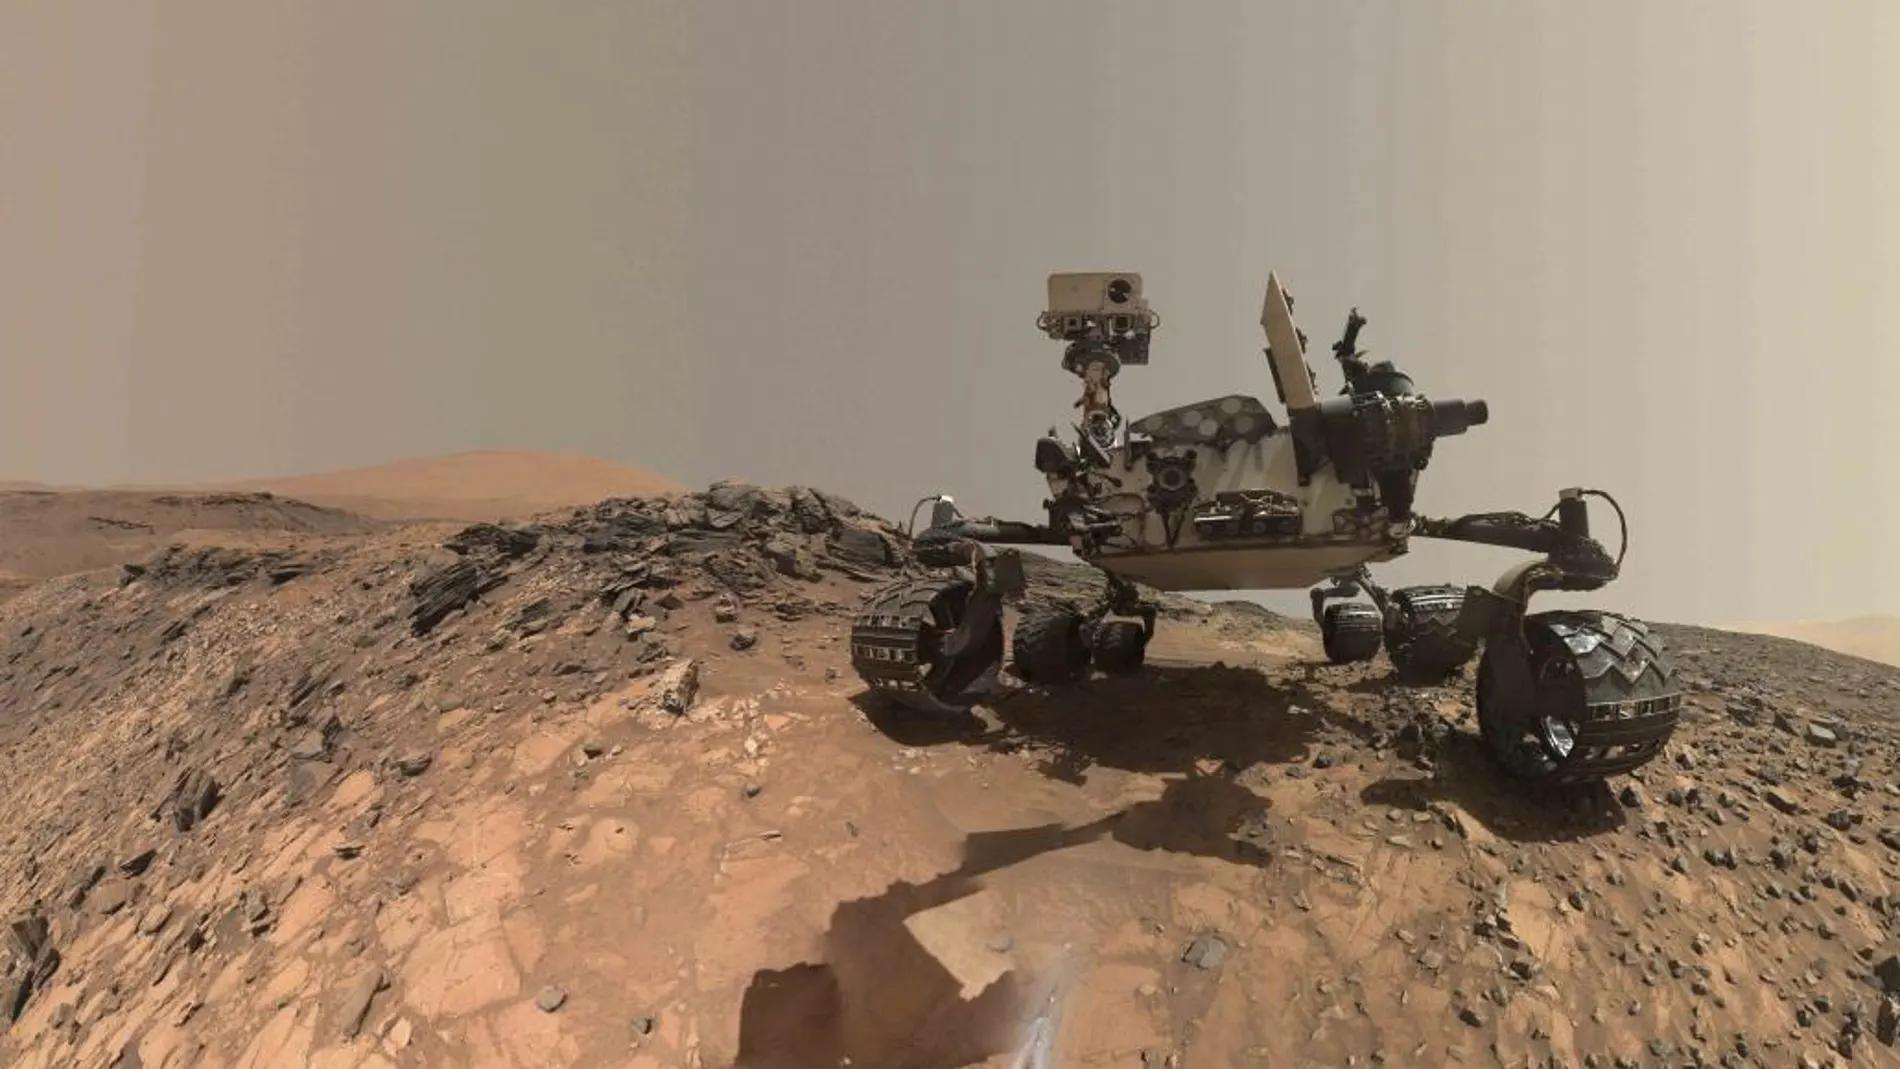 El robot explorador Curiosity sobre la superficie de marte en una imagen del 5 de agosto pasado